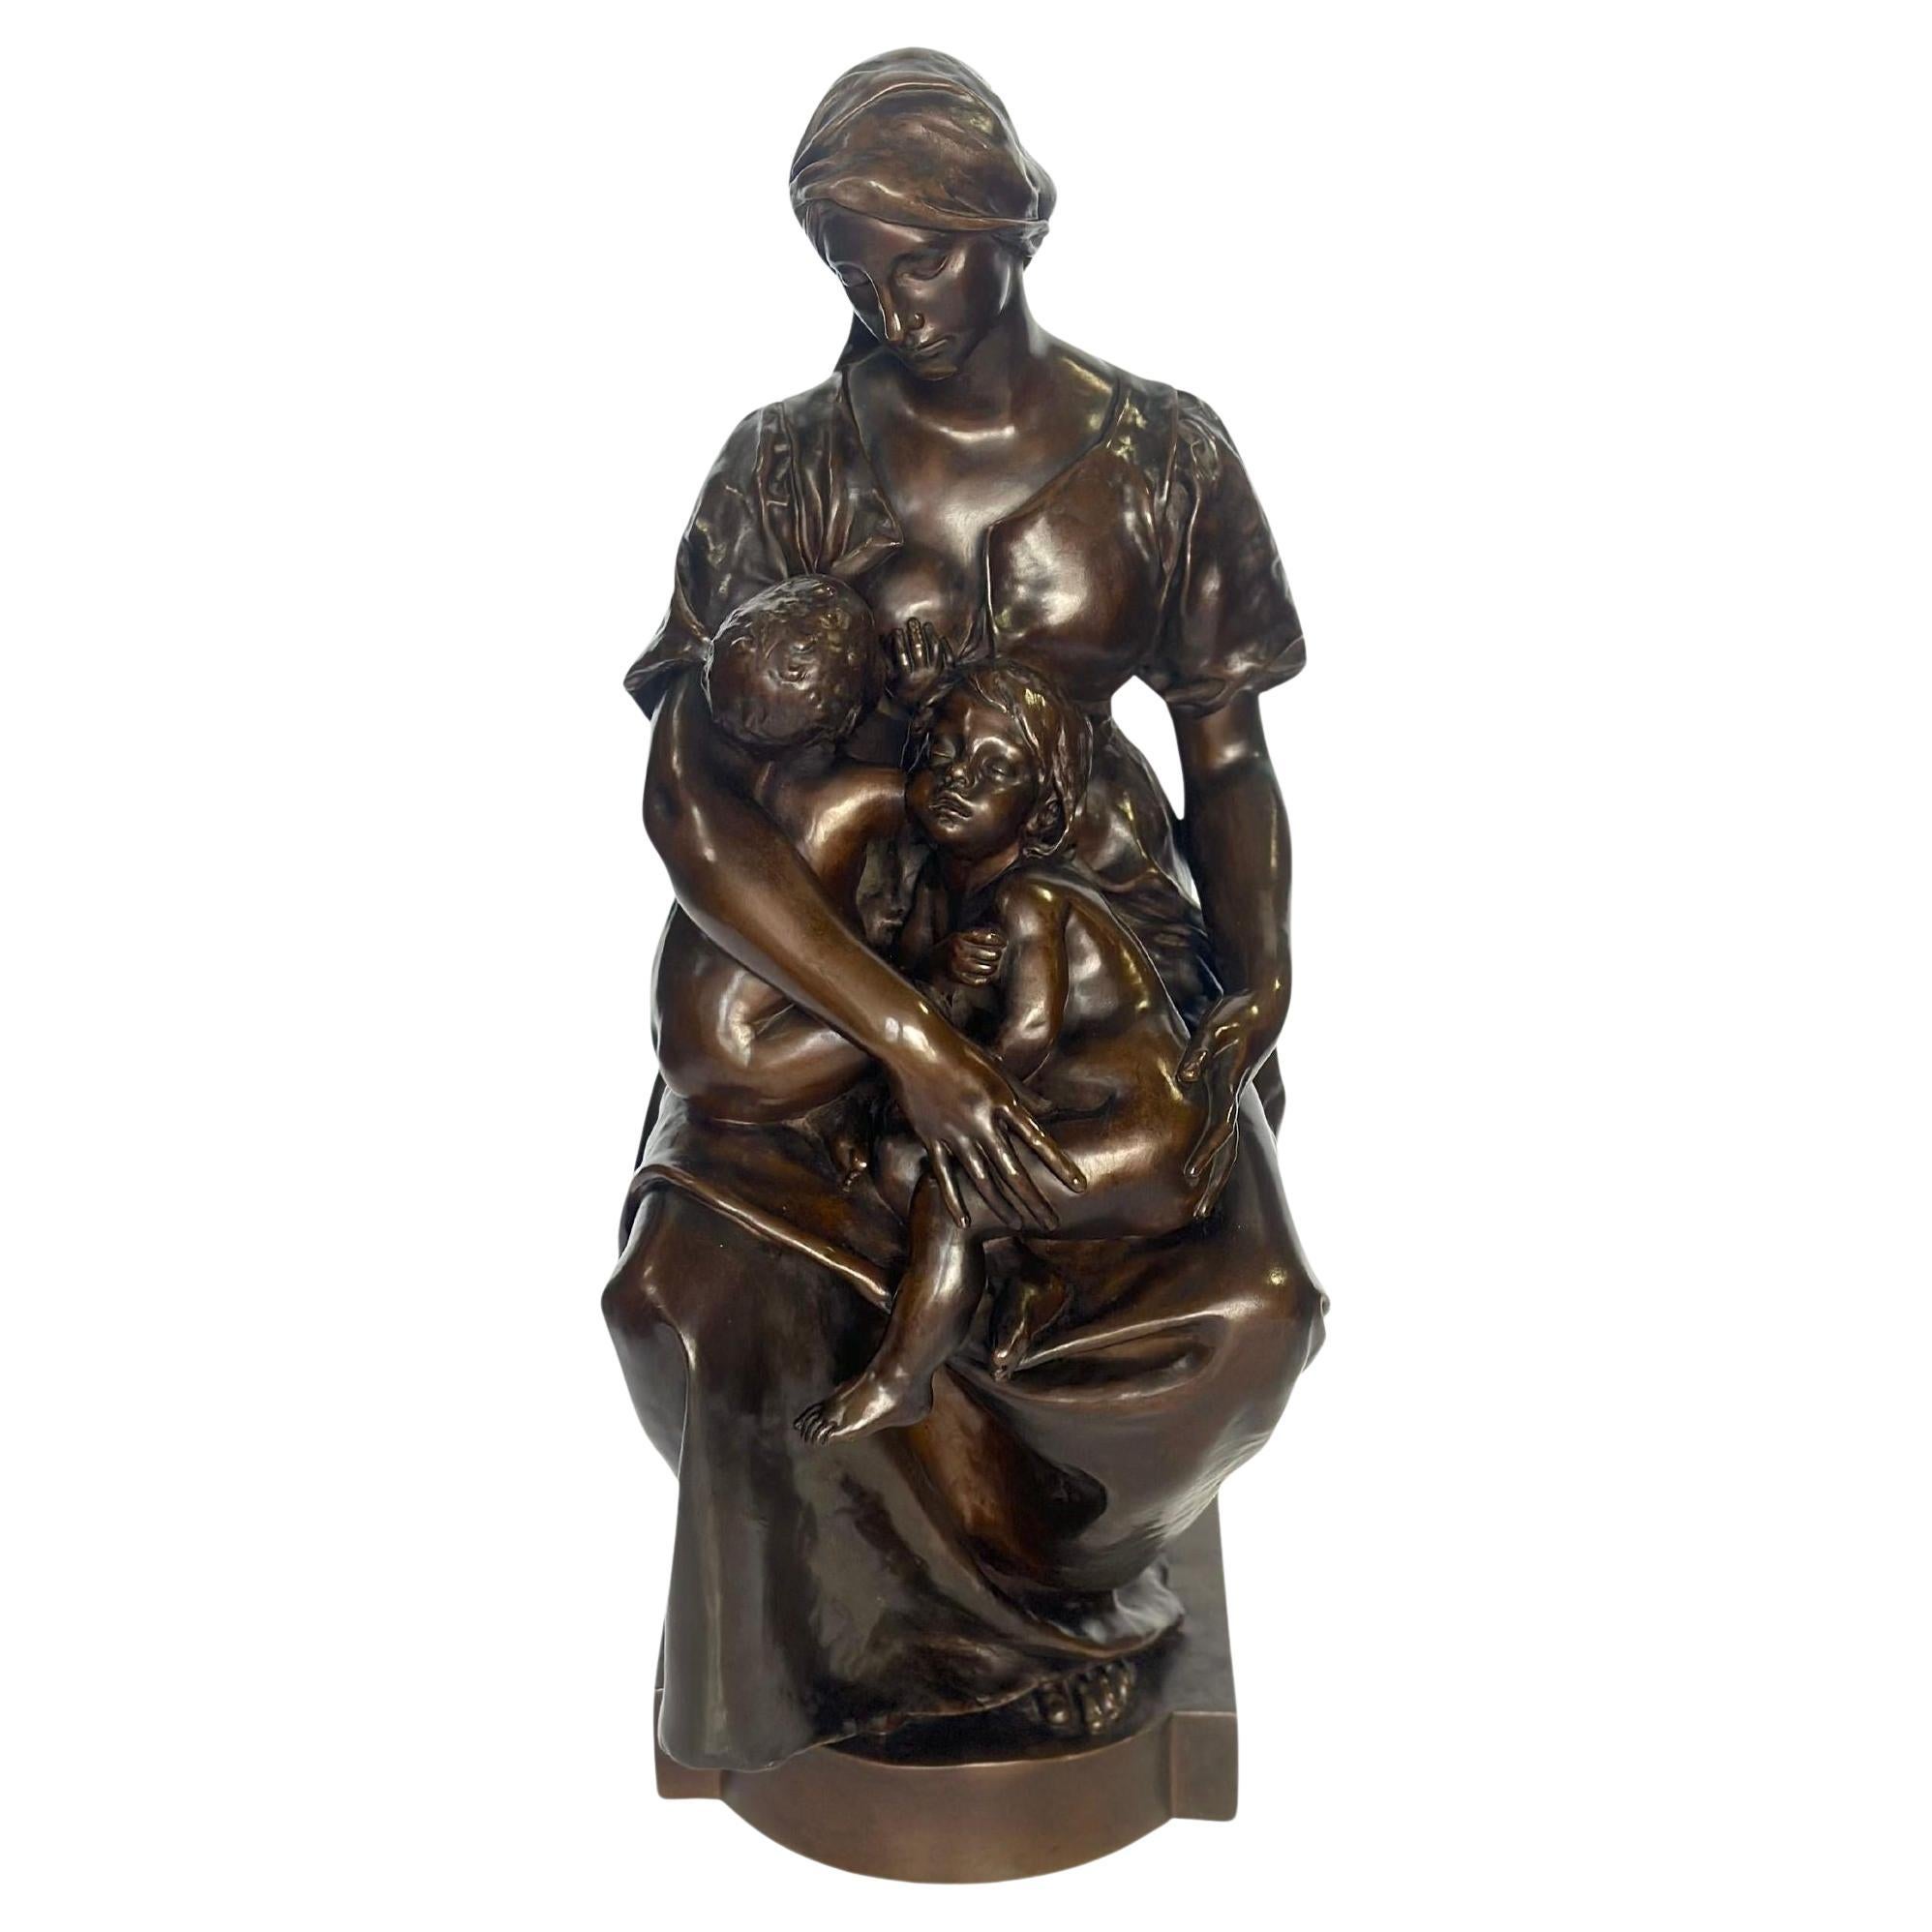 « La mère », sculpture en bronze de P. Dubois